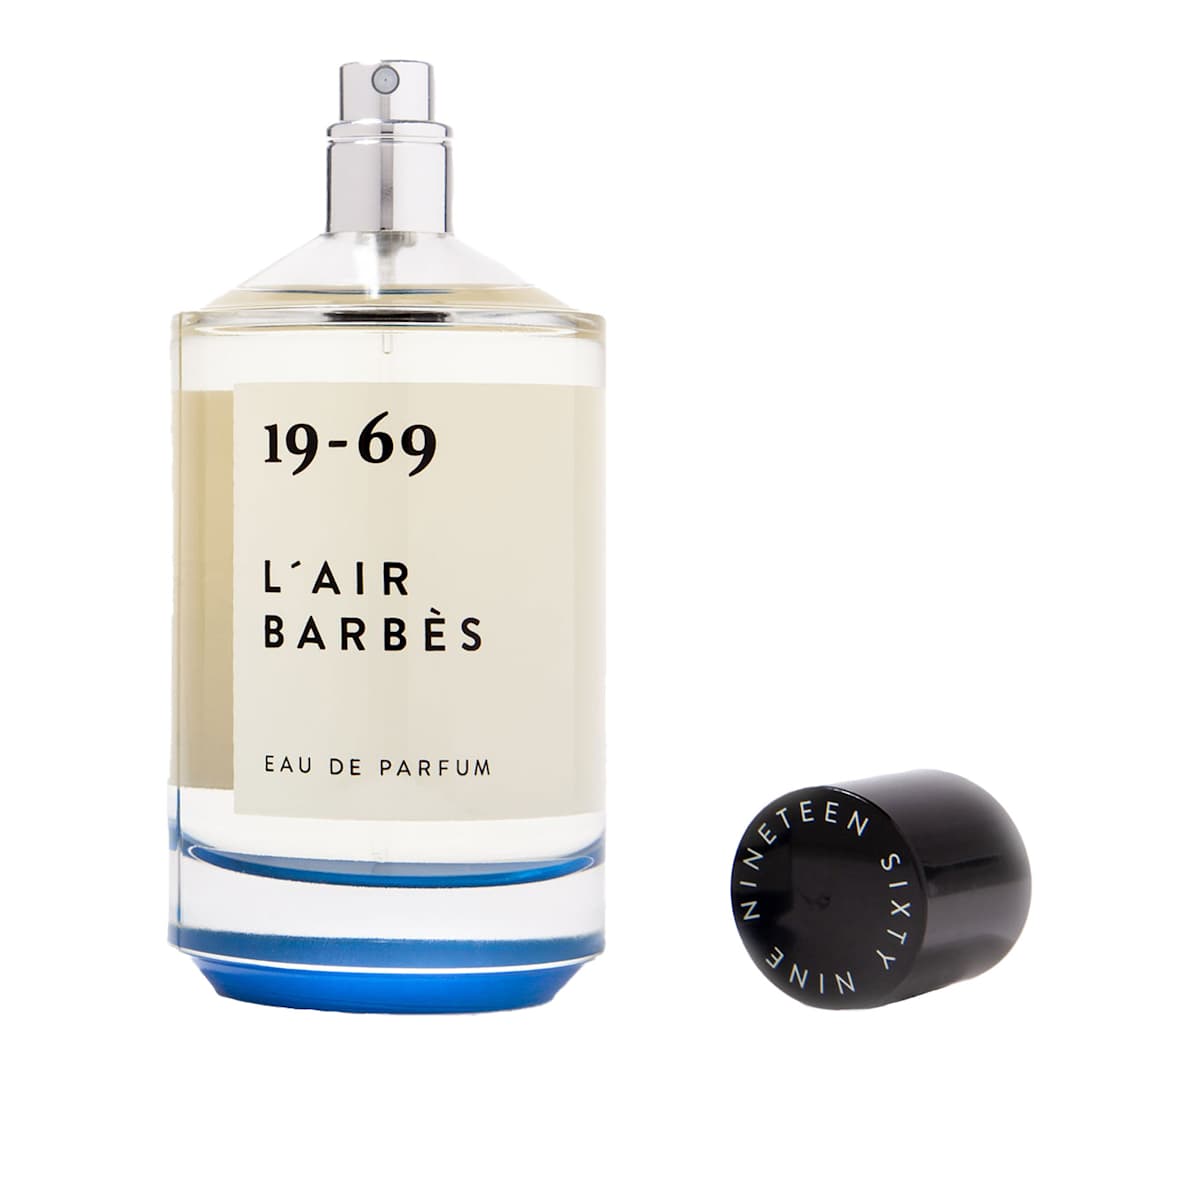 Buy Miami Blue, Eau de Parfum from 19-69